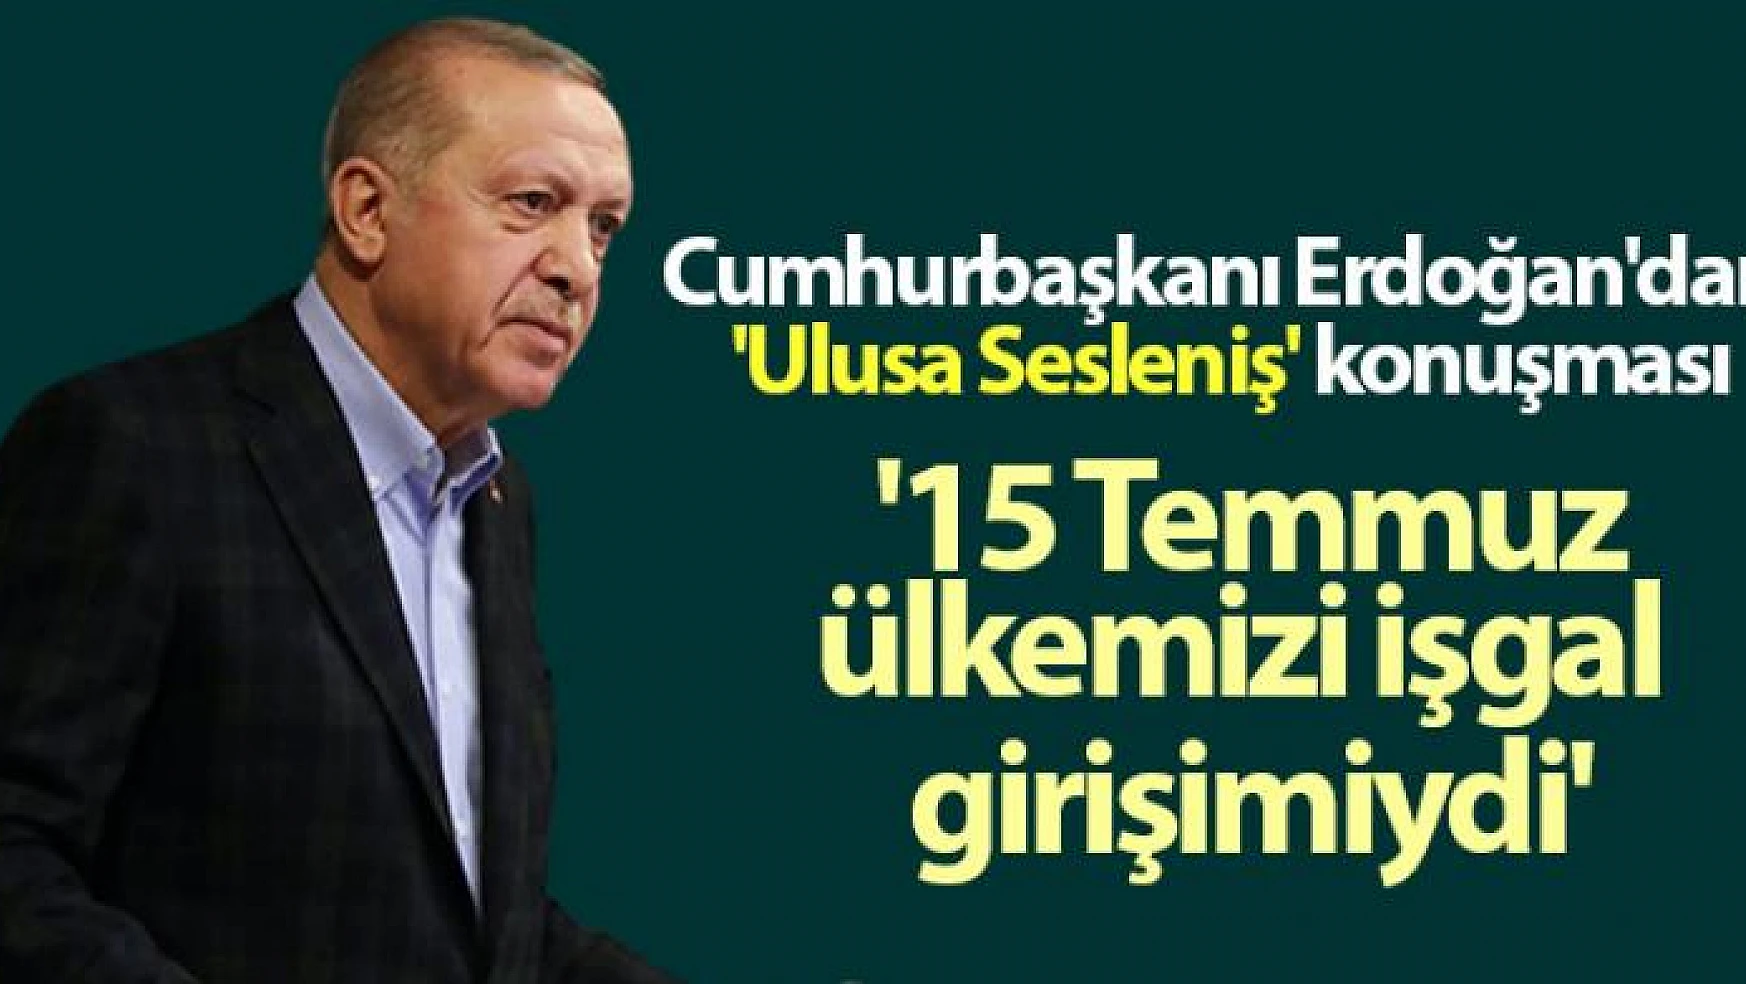 Cumhurbaşkanı Erdoğan: '15 Temmuz, hiçbir şüpheye yer bırakmayacak şekilde ülkemizi işgal girişimiydi'